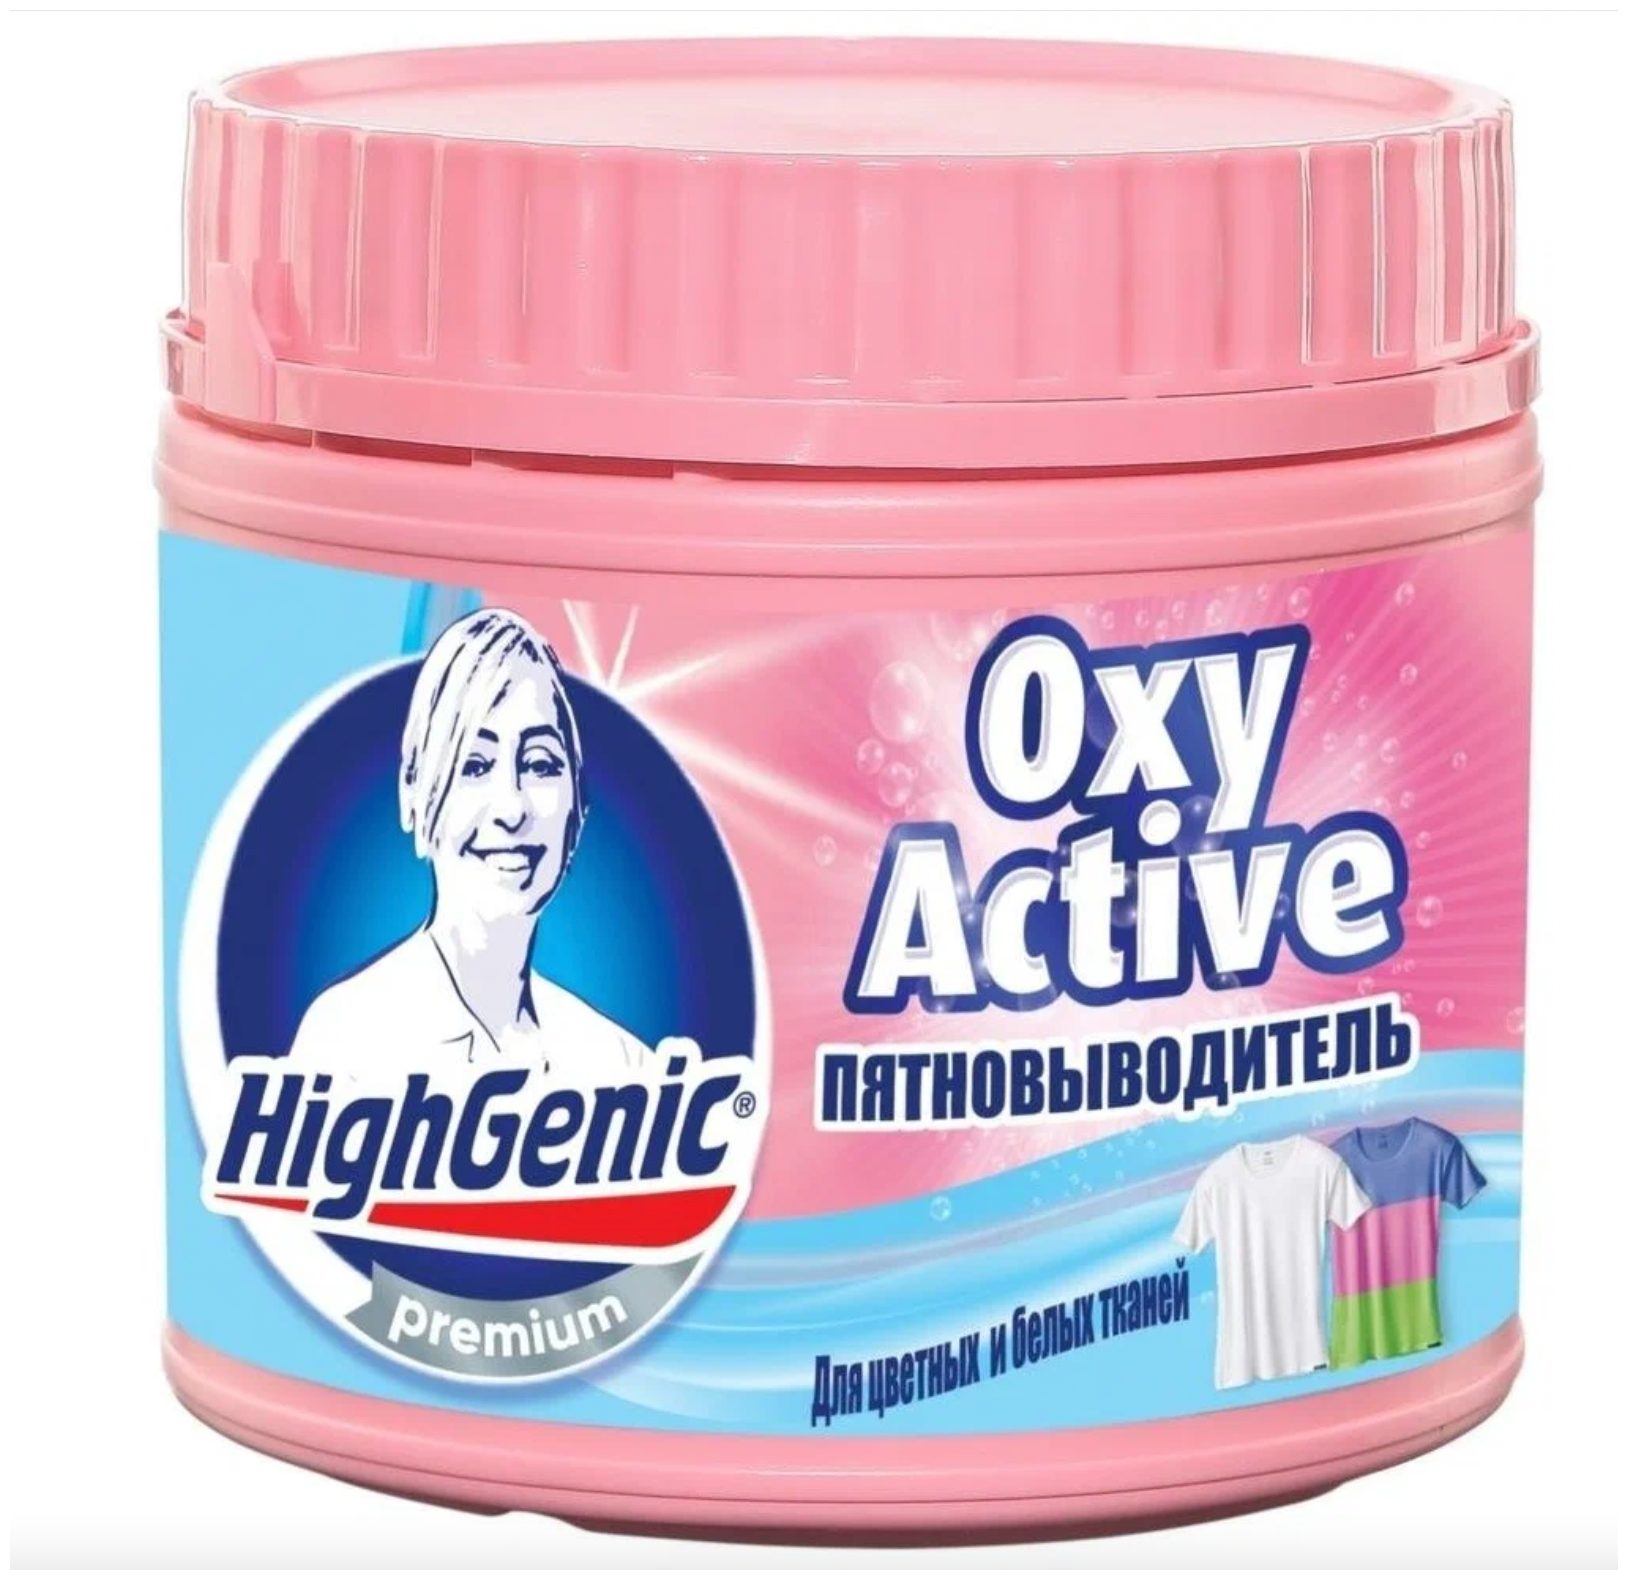 Пятновыводитель Oxy Active HighGenic